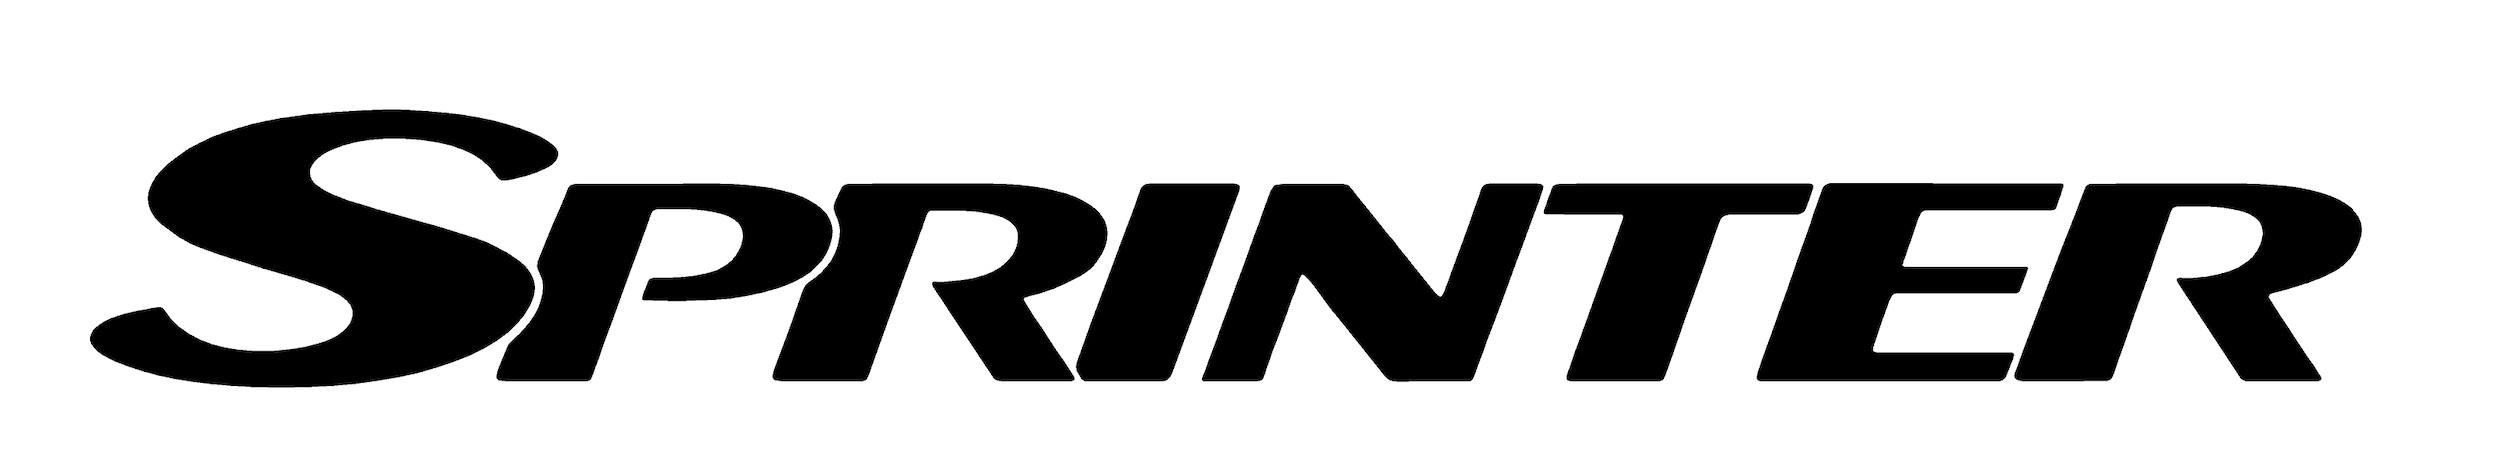 Mercedes sprinter logo vector #2